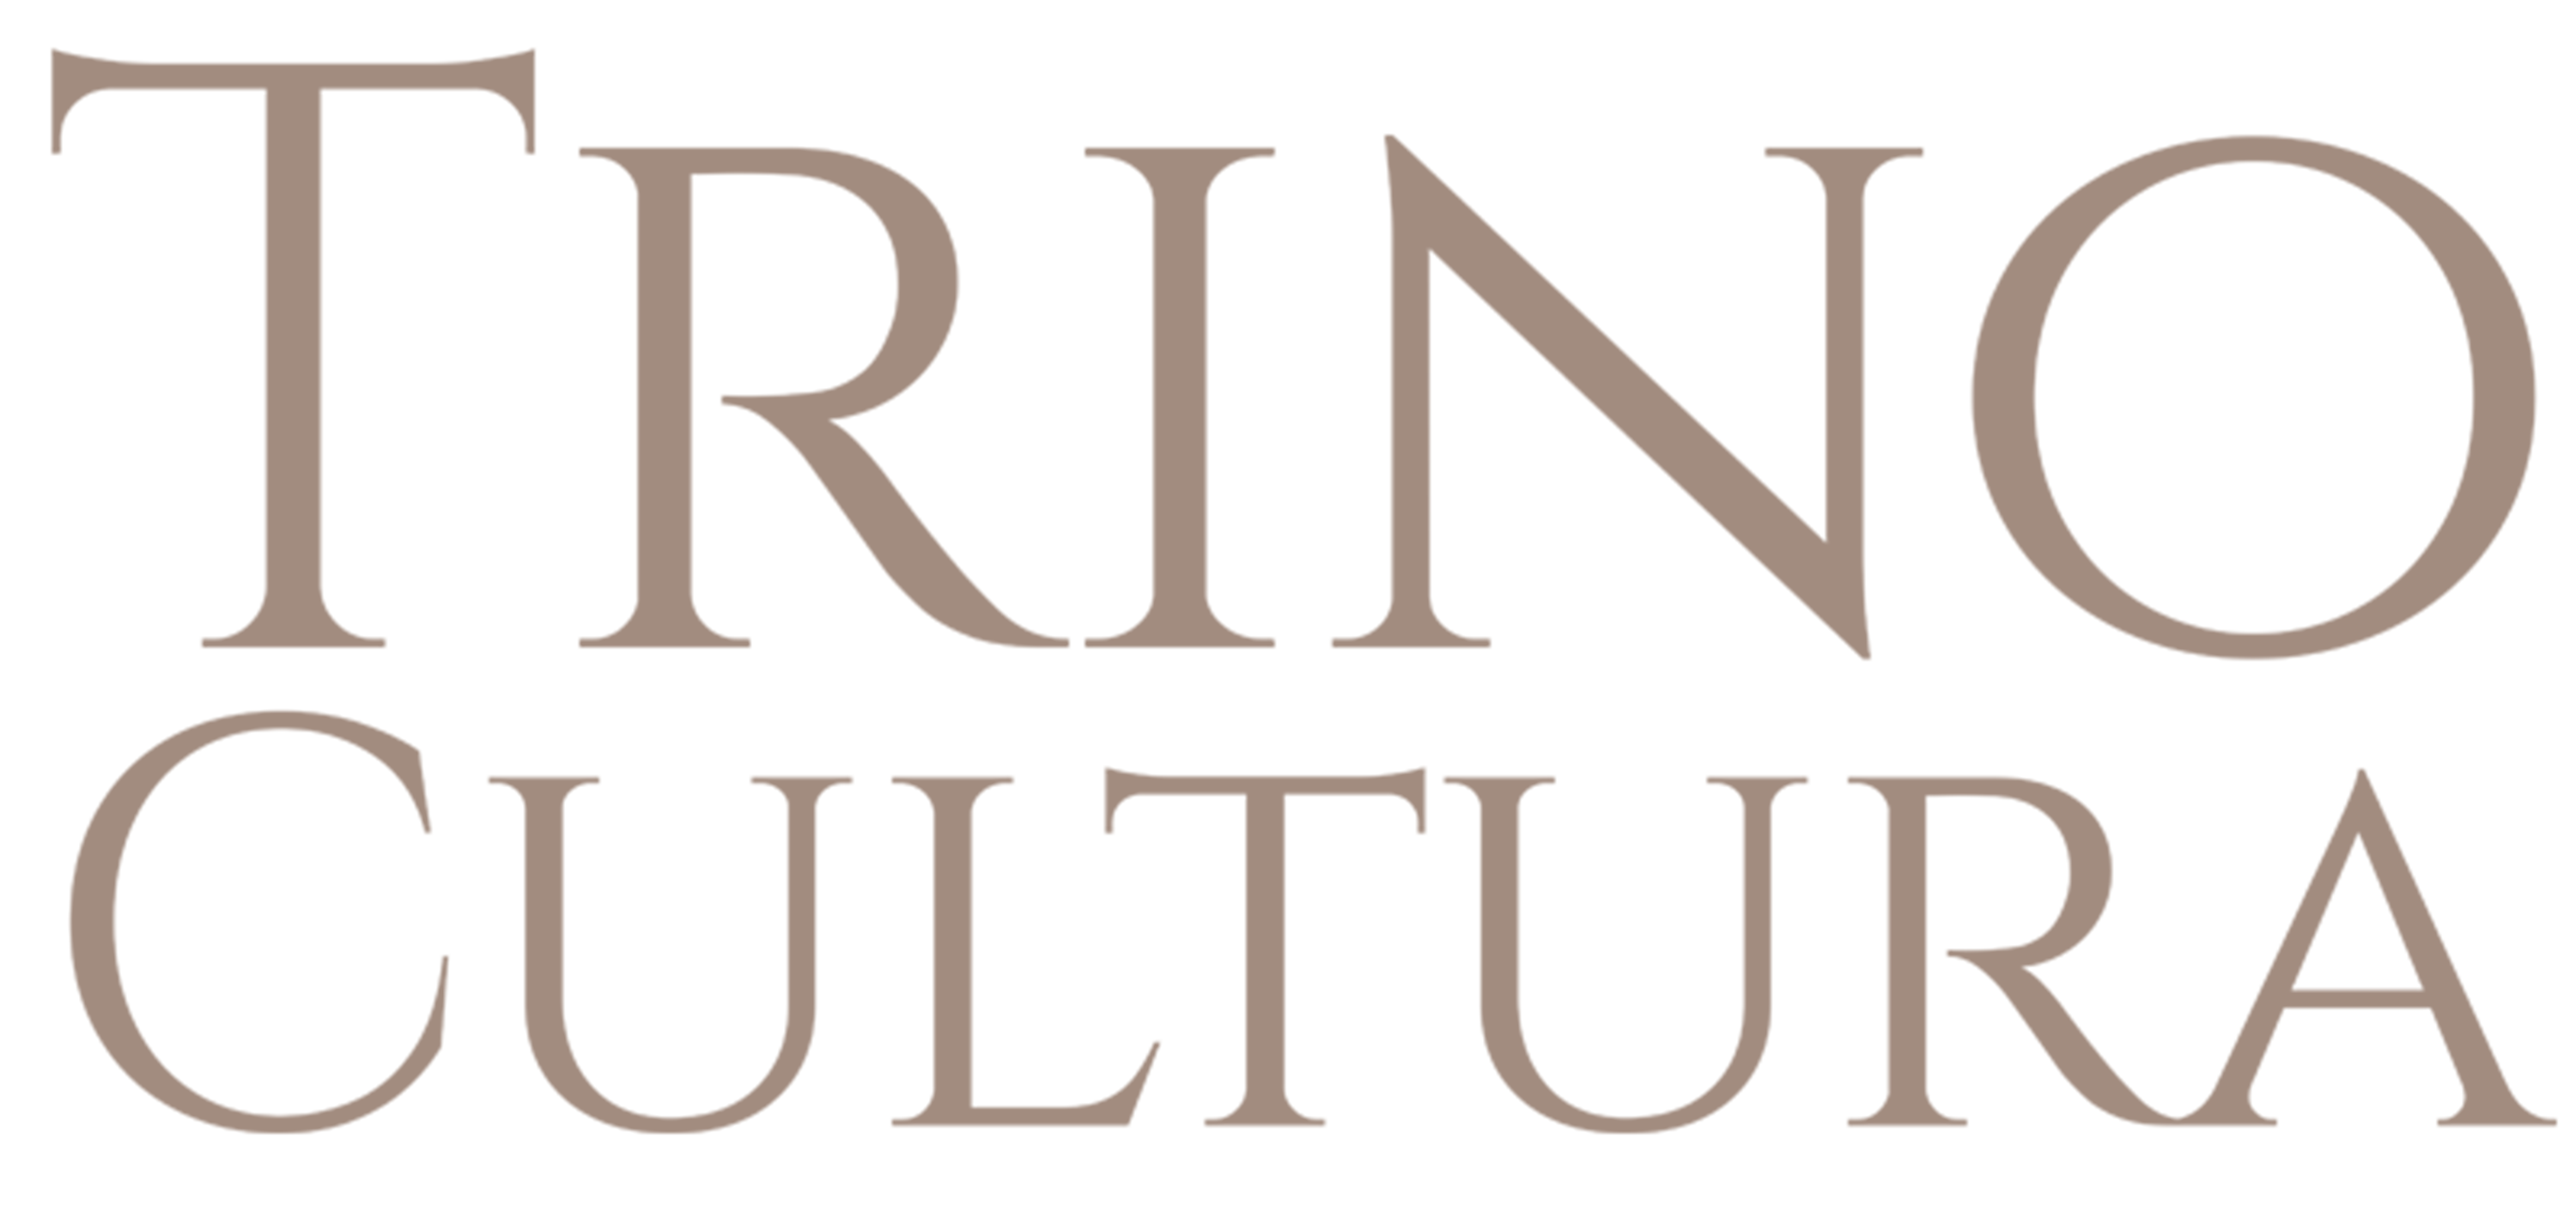 Trino Cultura